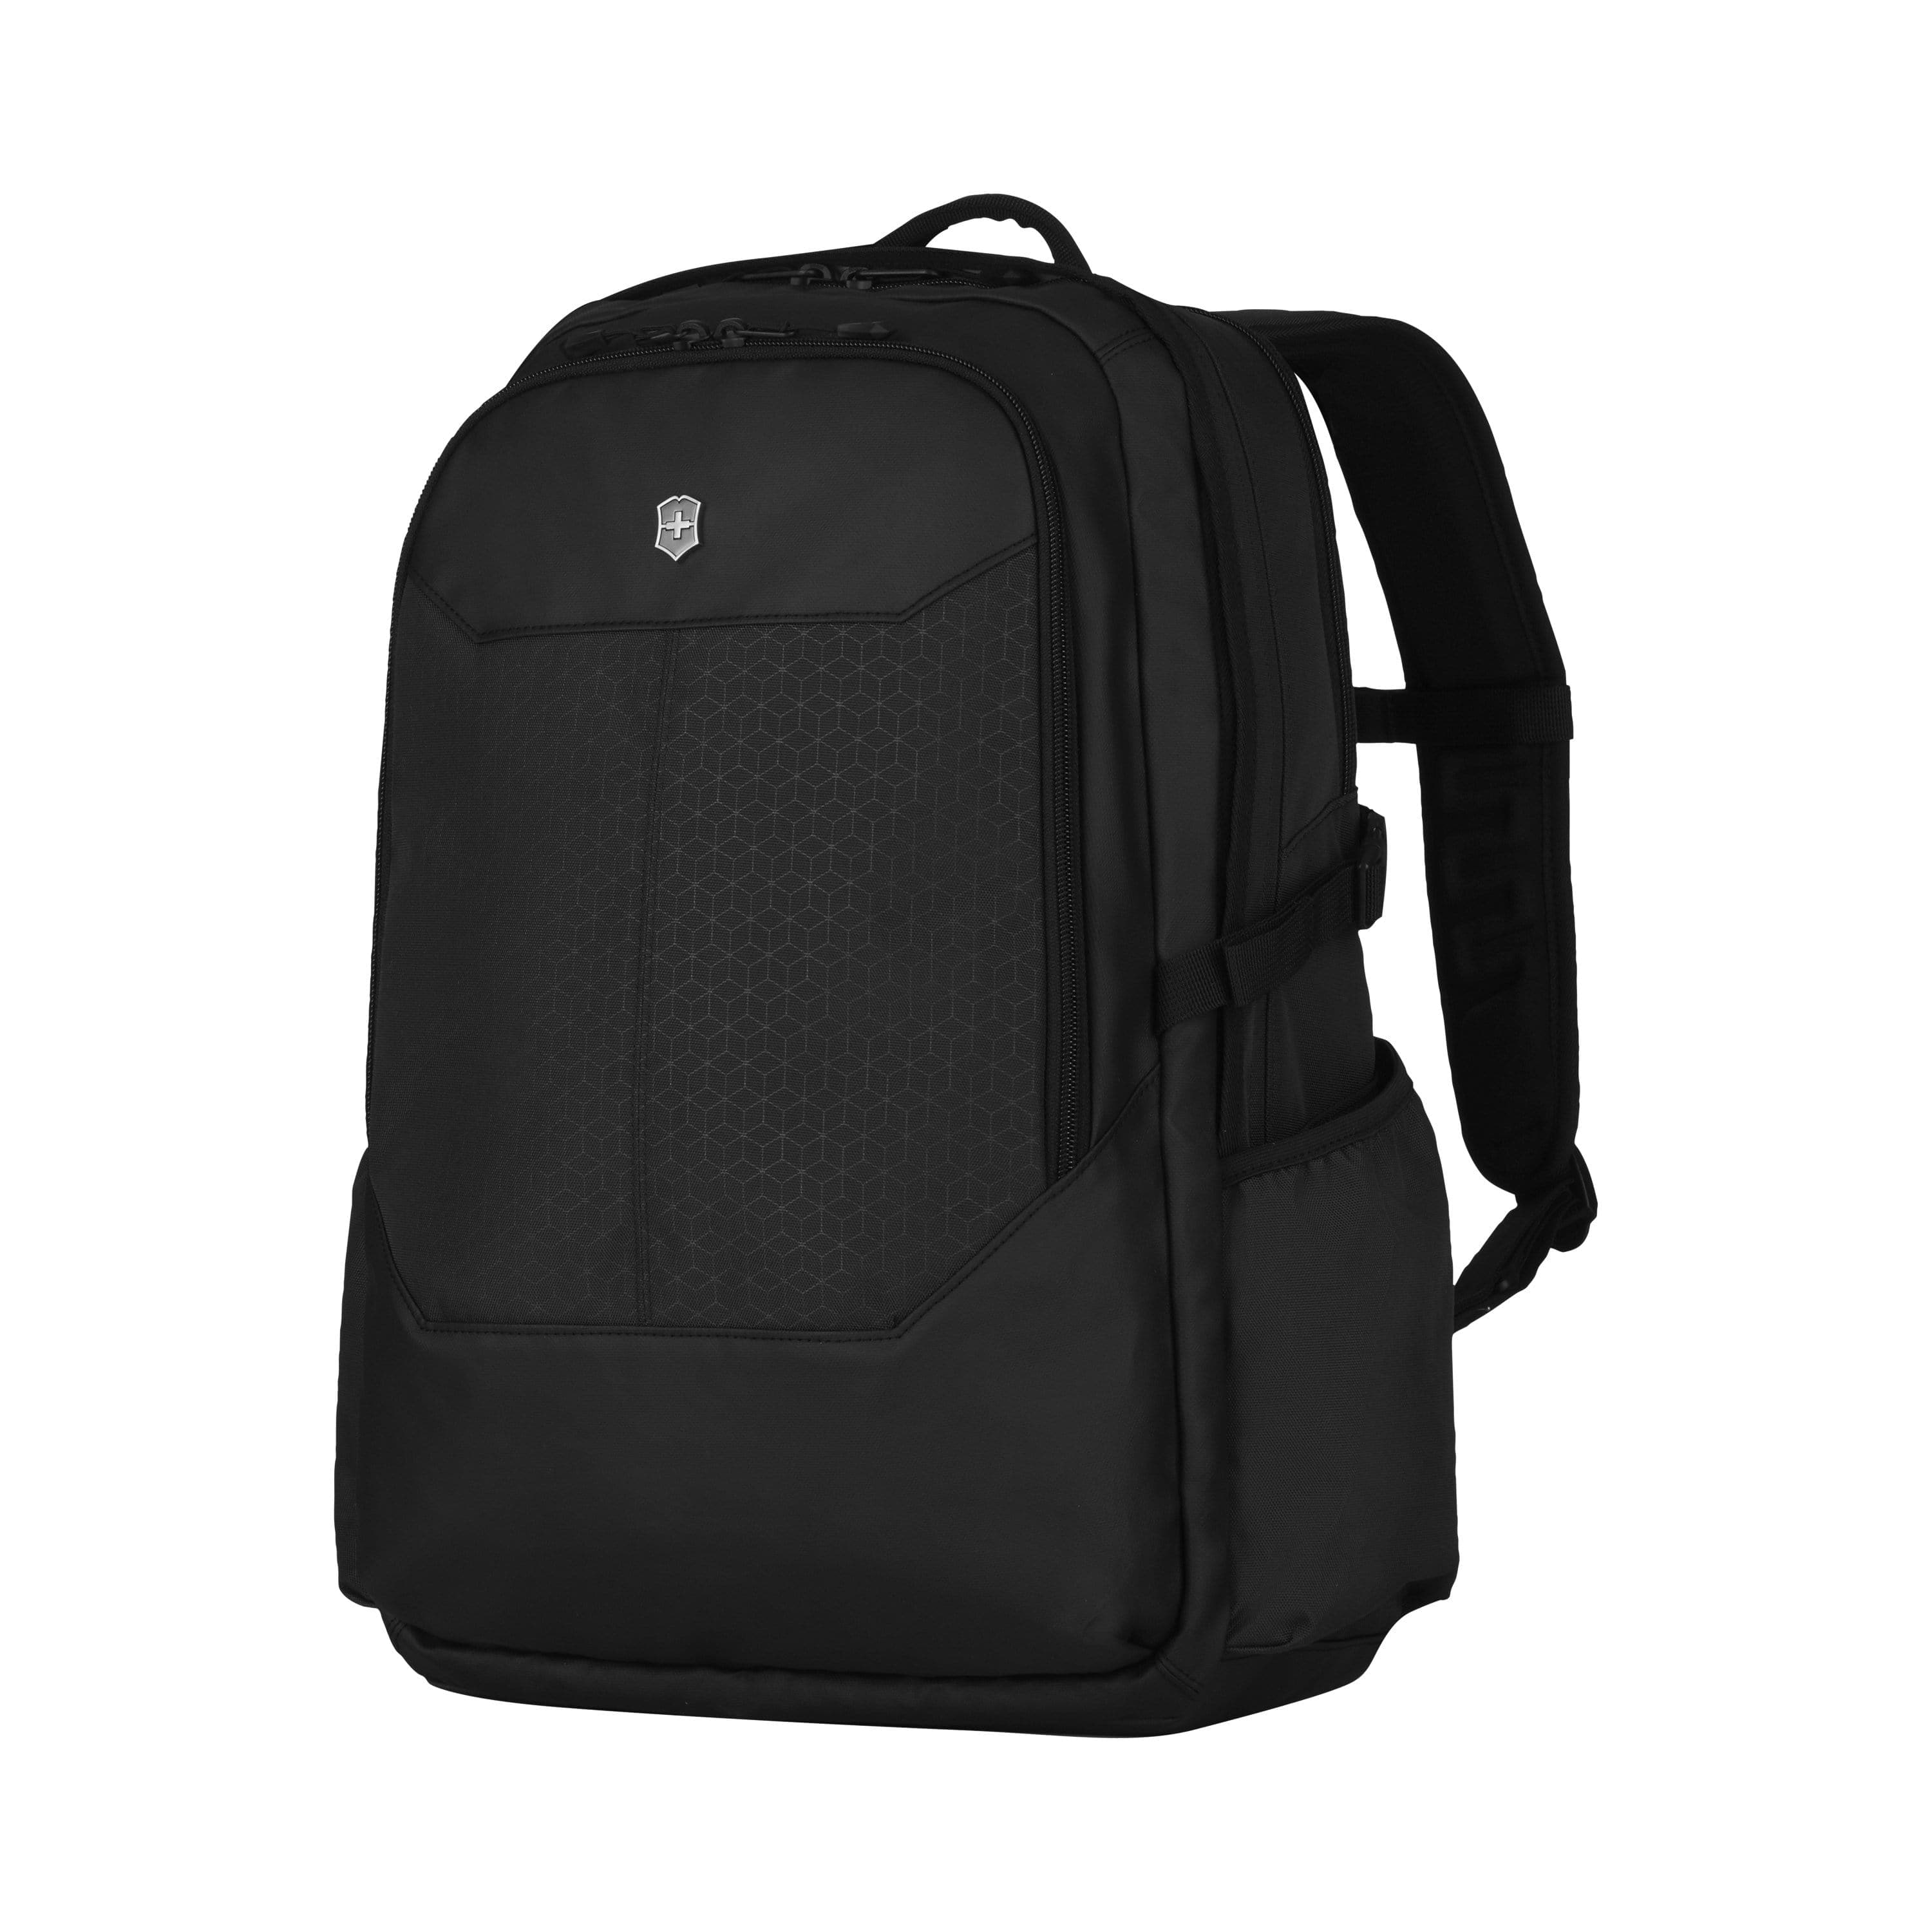 Victorinox Altmont Original Deluxe 17 inch Laptop Backpack Black - 610475